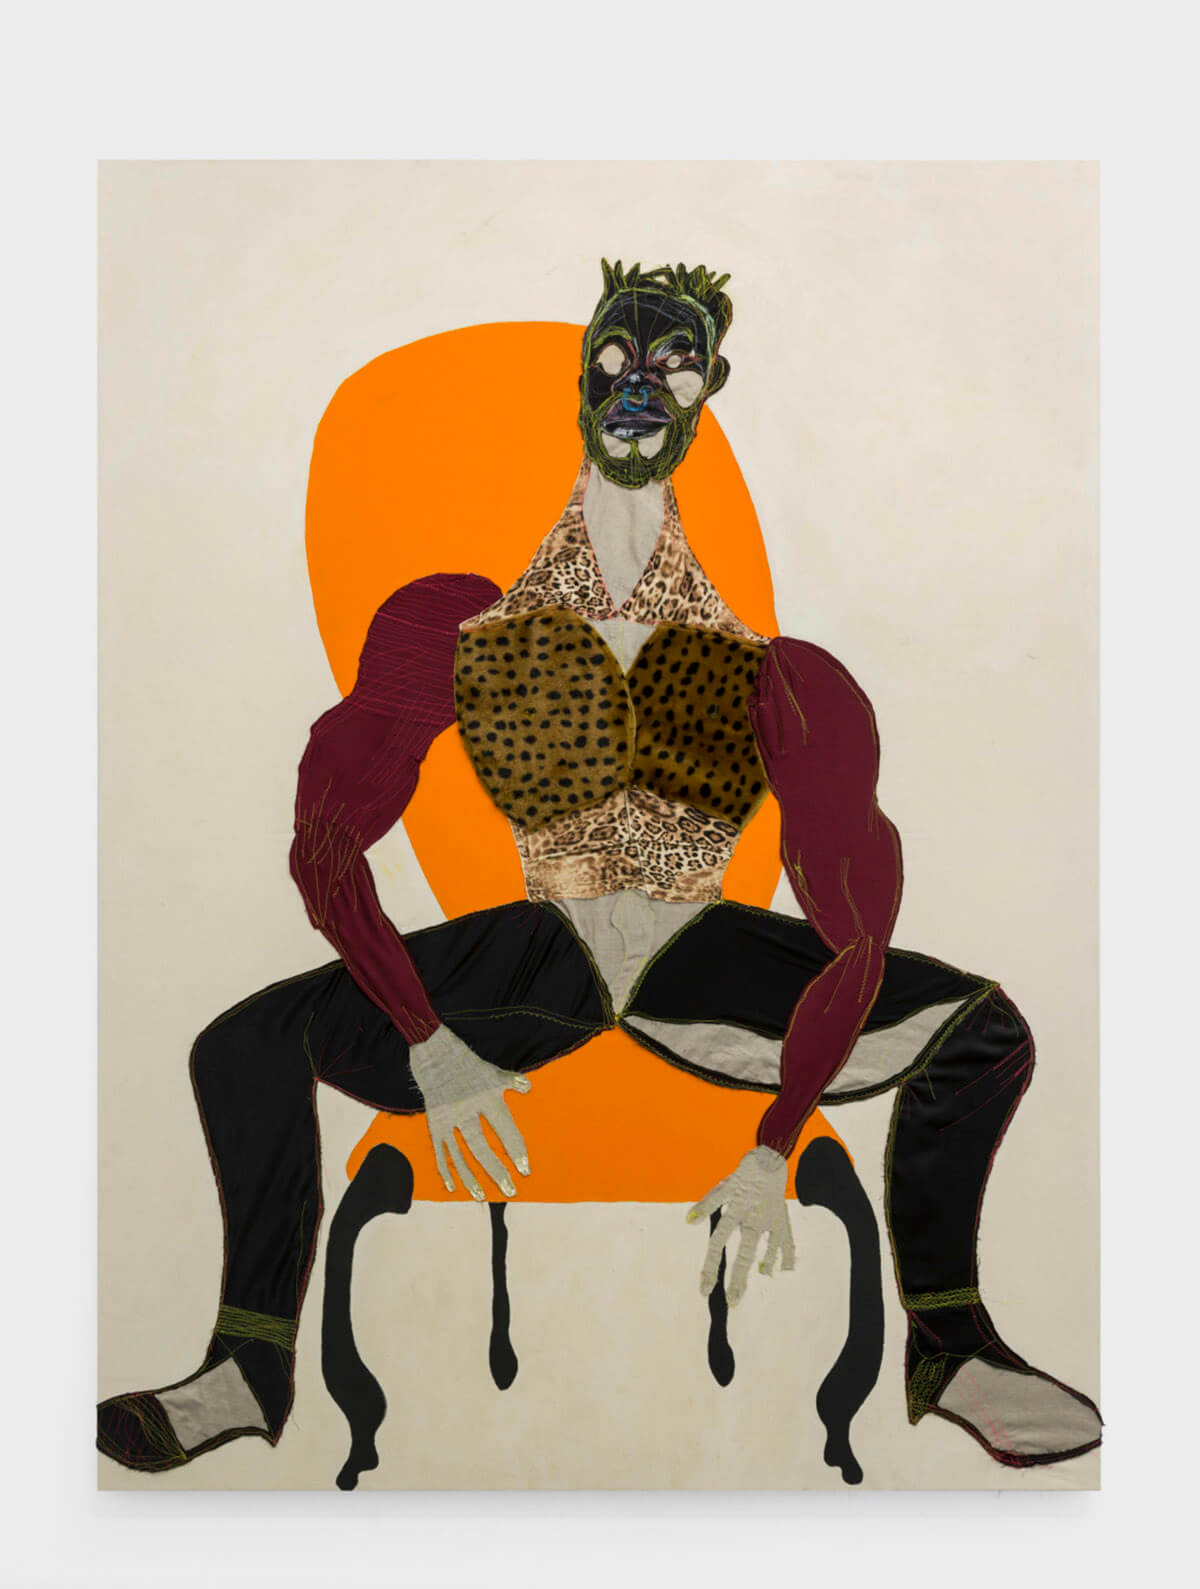 Tschabalala Self artwork Mane for gender exhibition in New York 